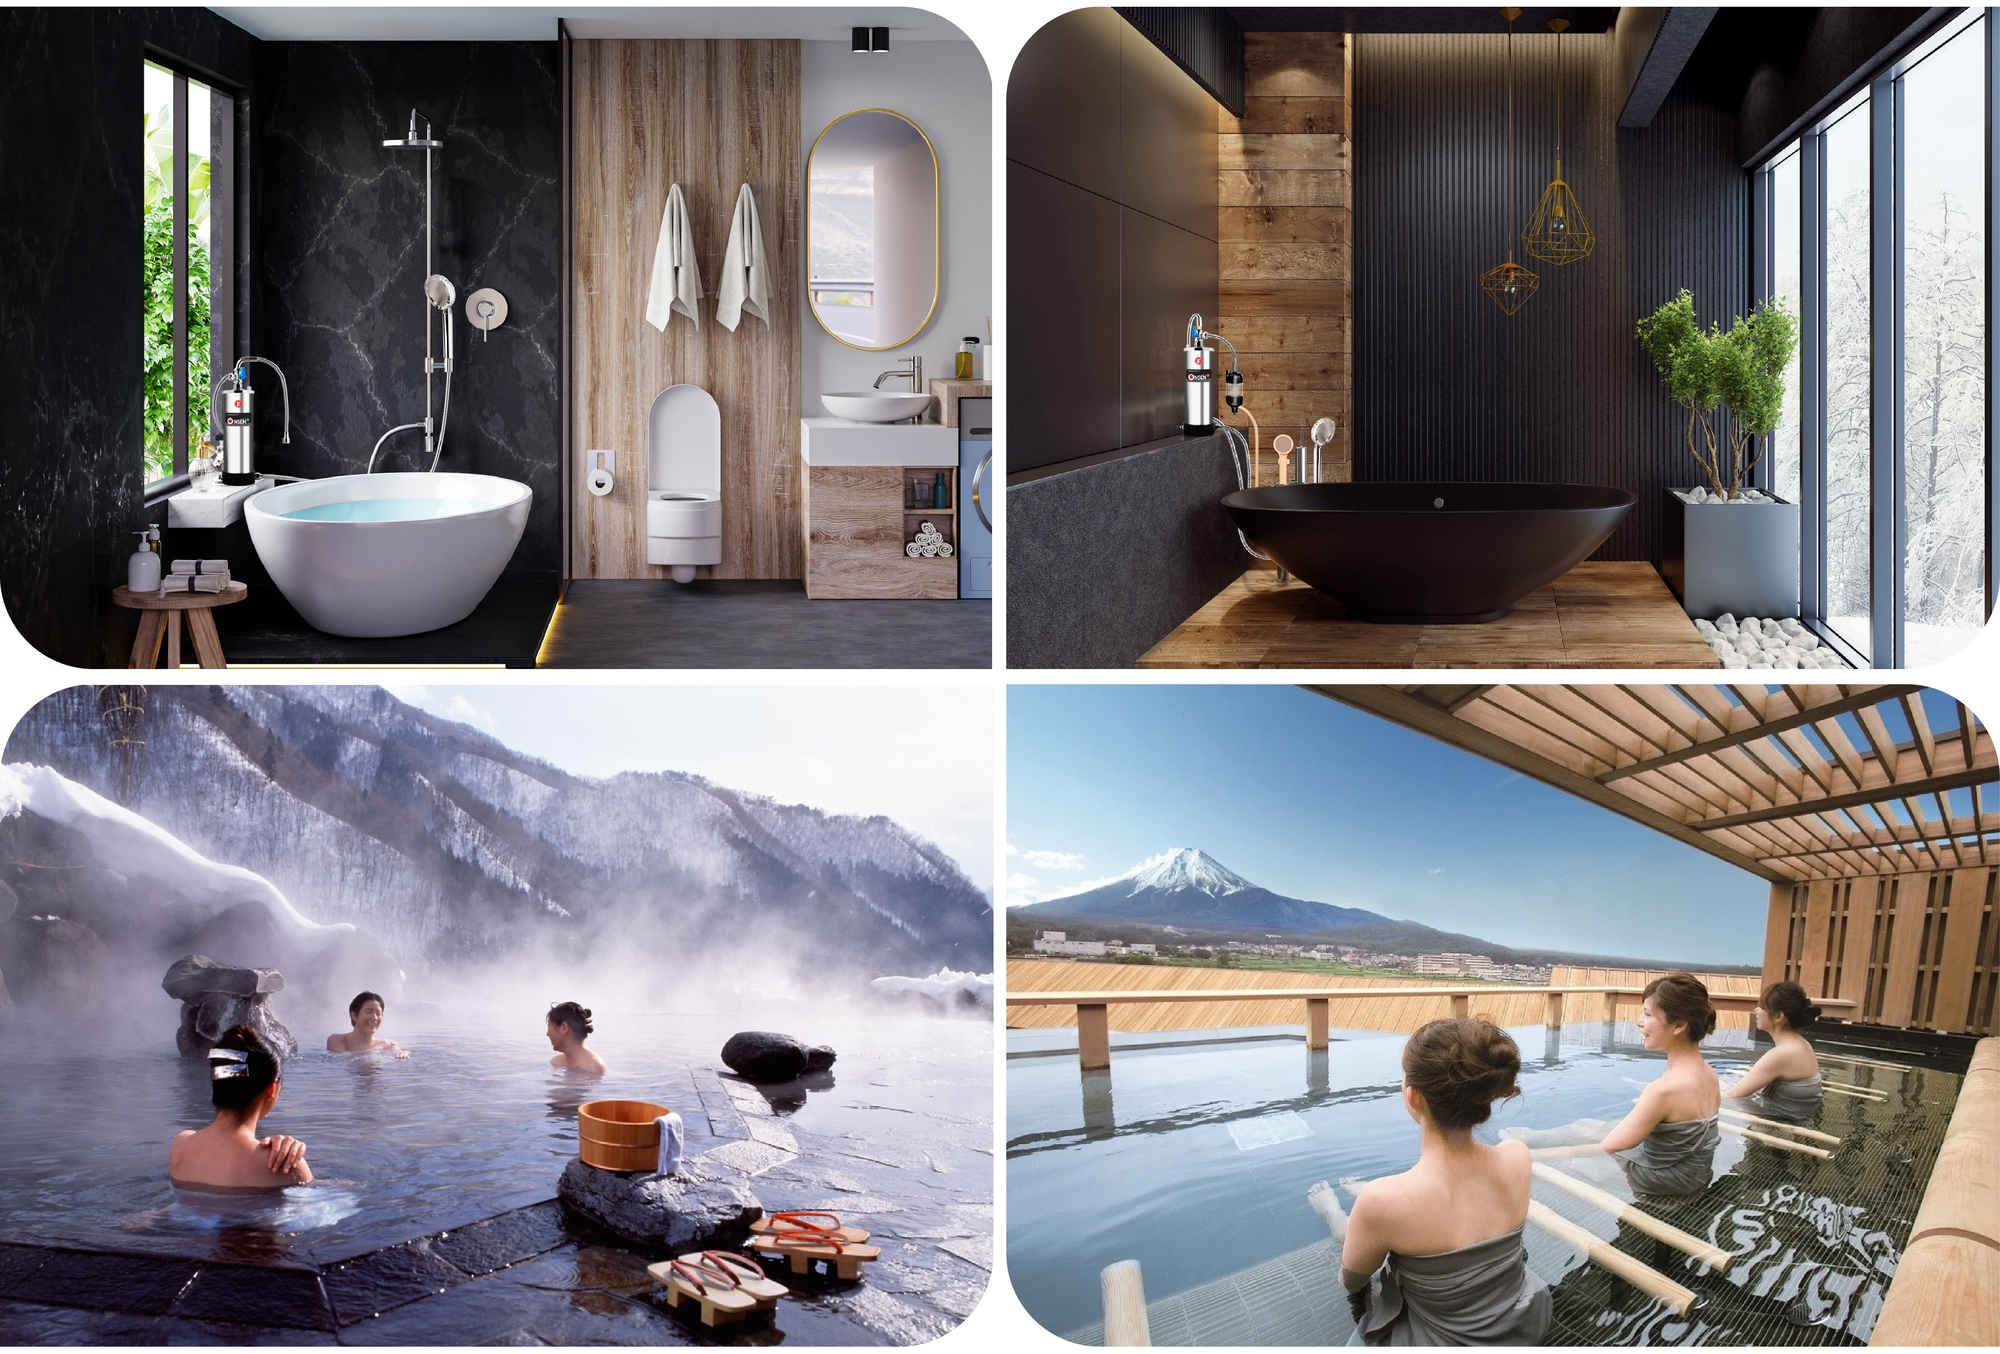 Đầu tư máy tắm onsen đón đầu xu hướng nghỉ dưỡng tại giaphong cách Nhật Bản - Ảnh 10.